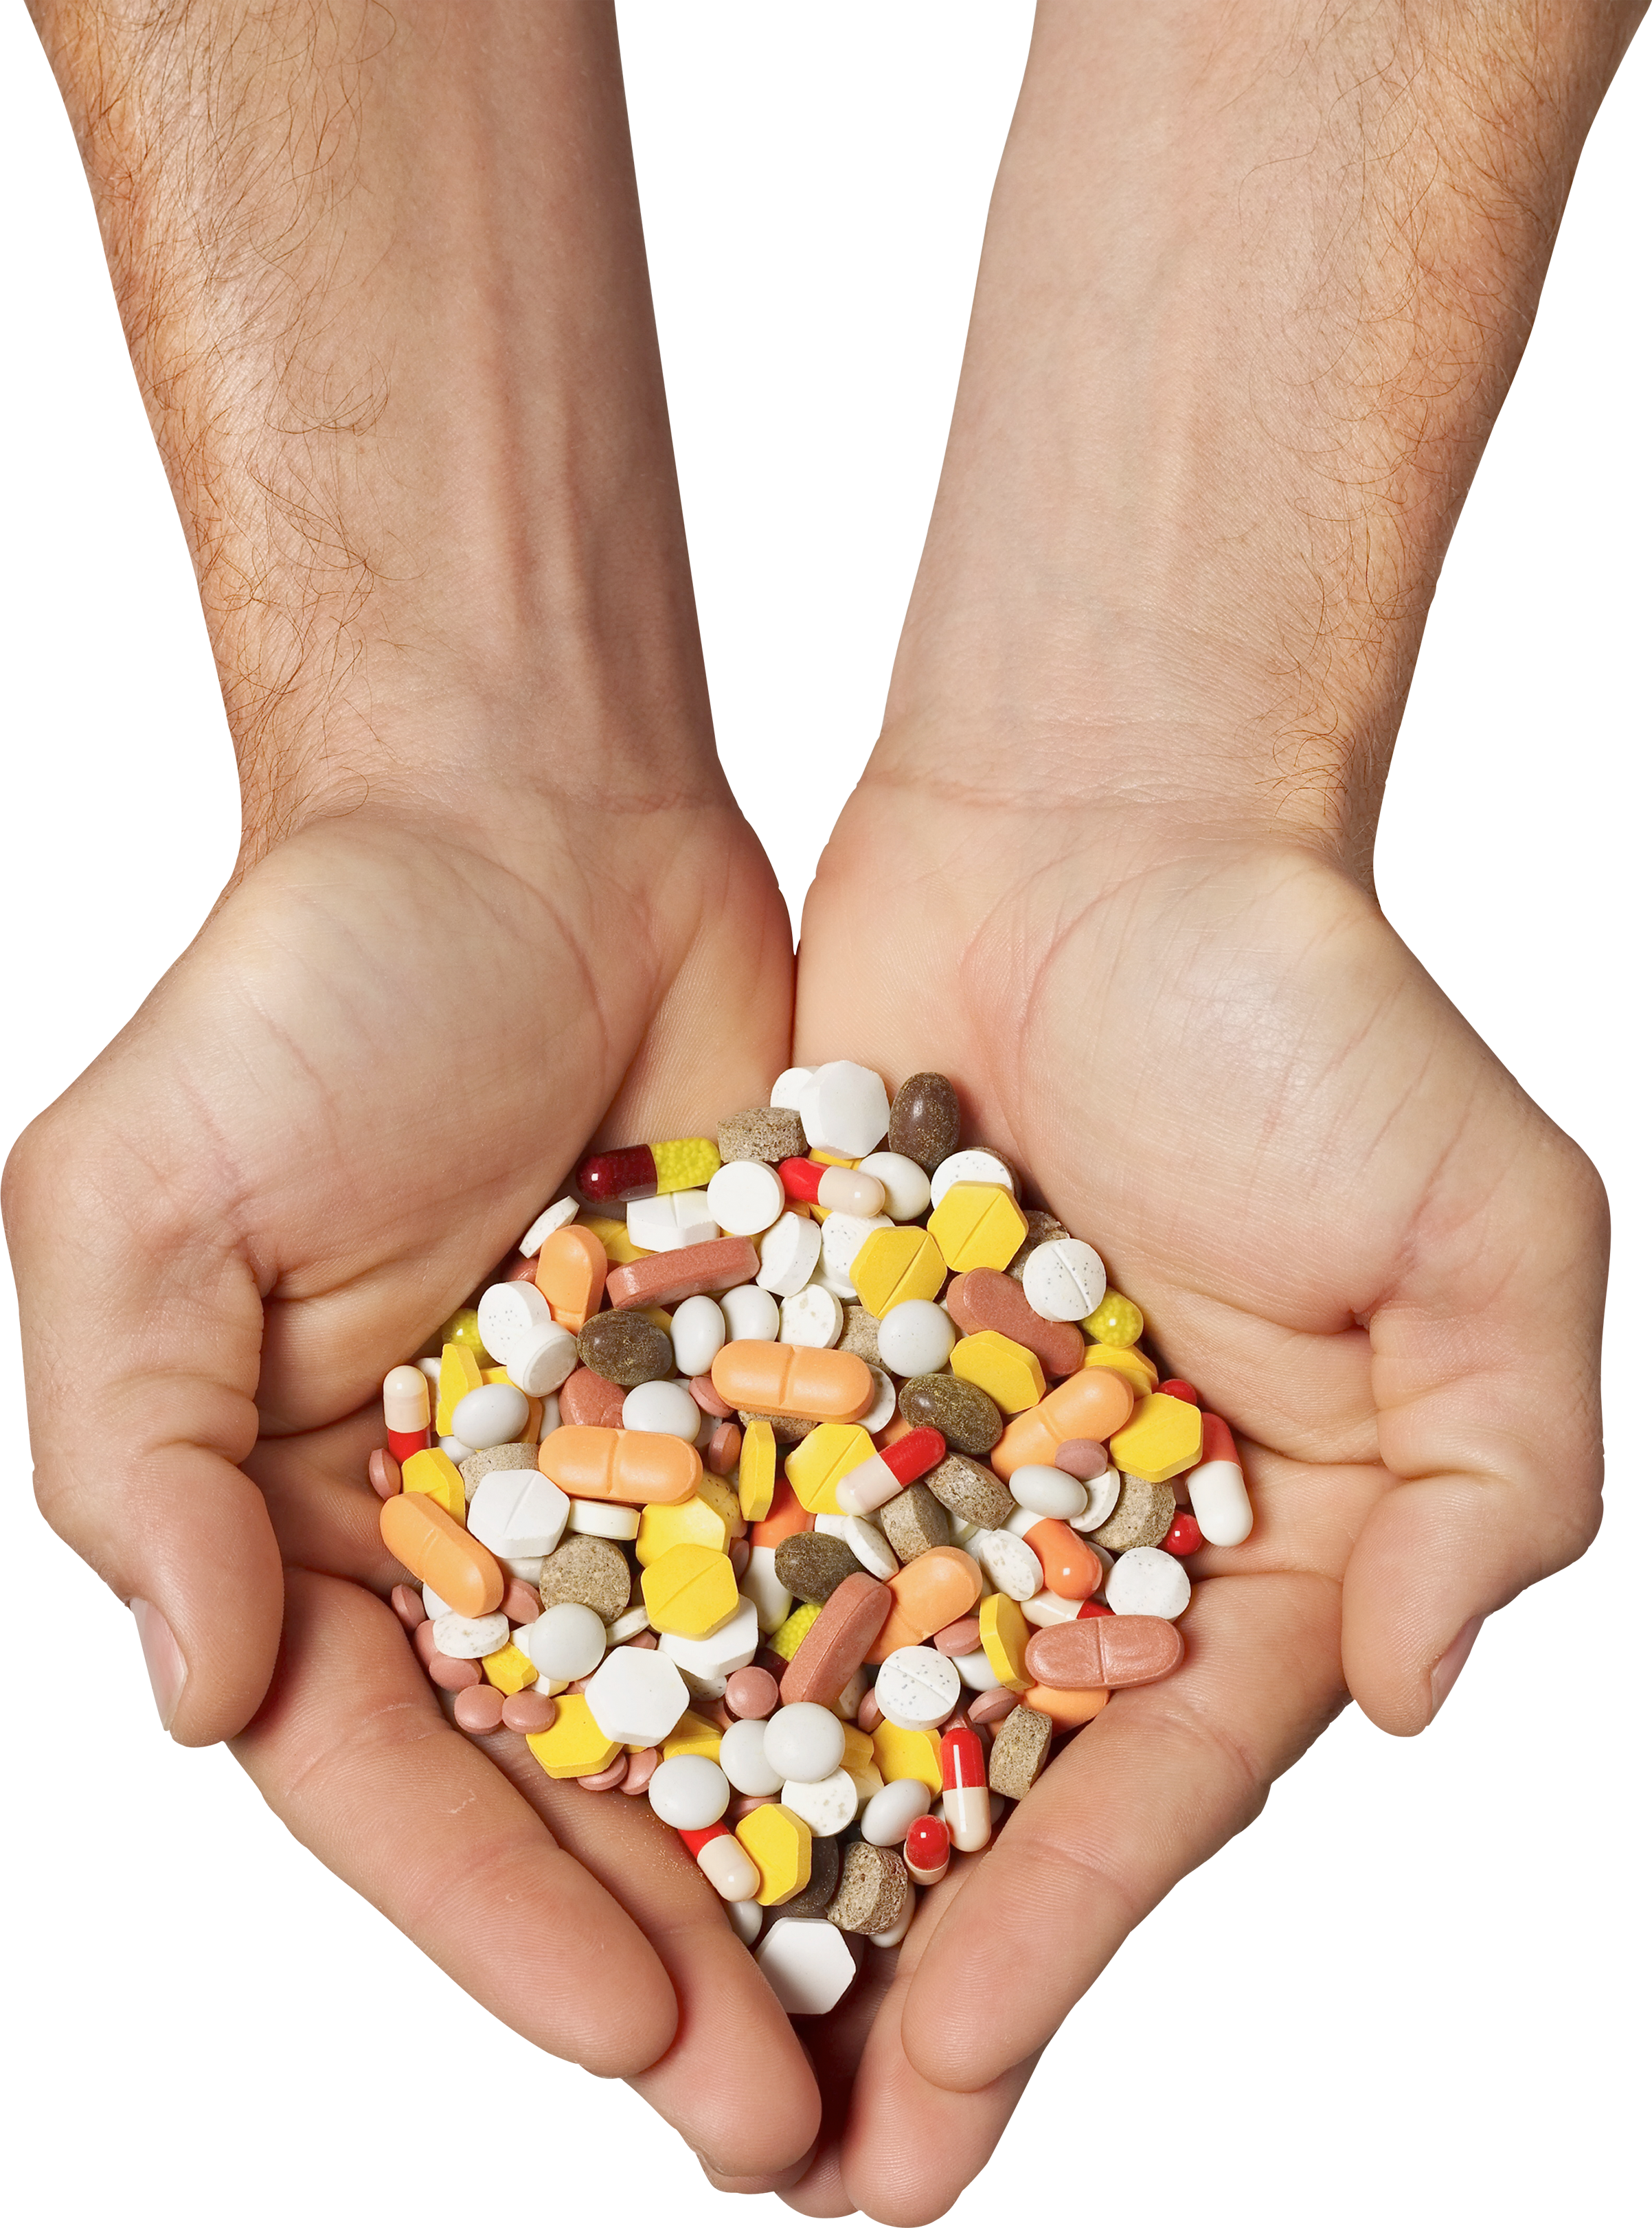 Pills in Hands